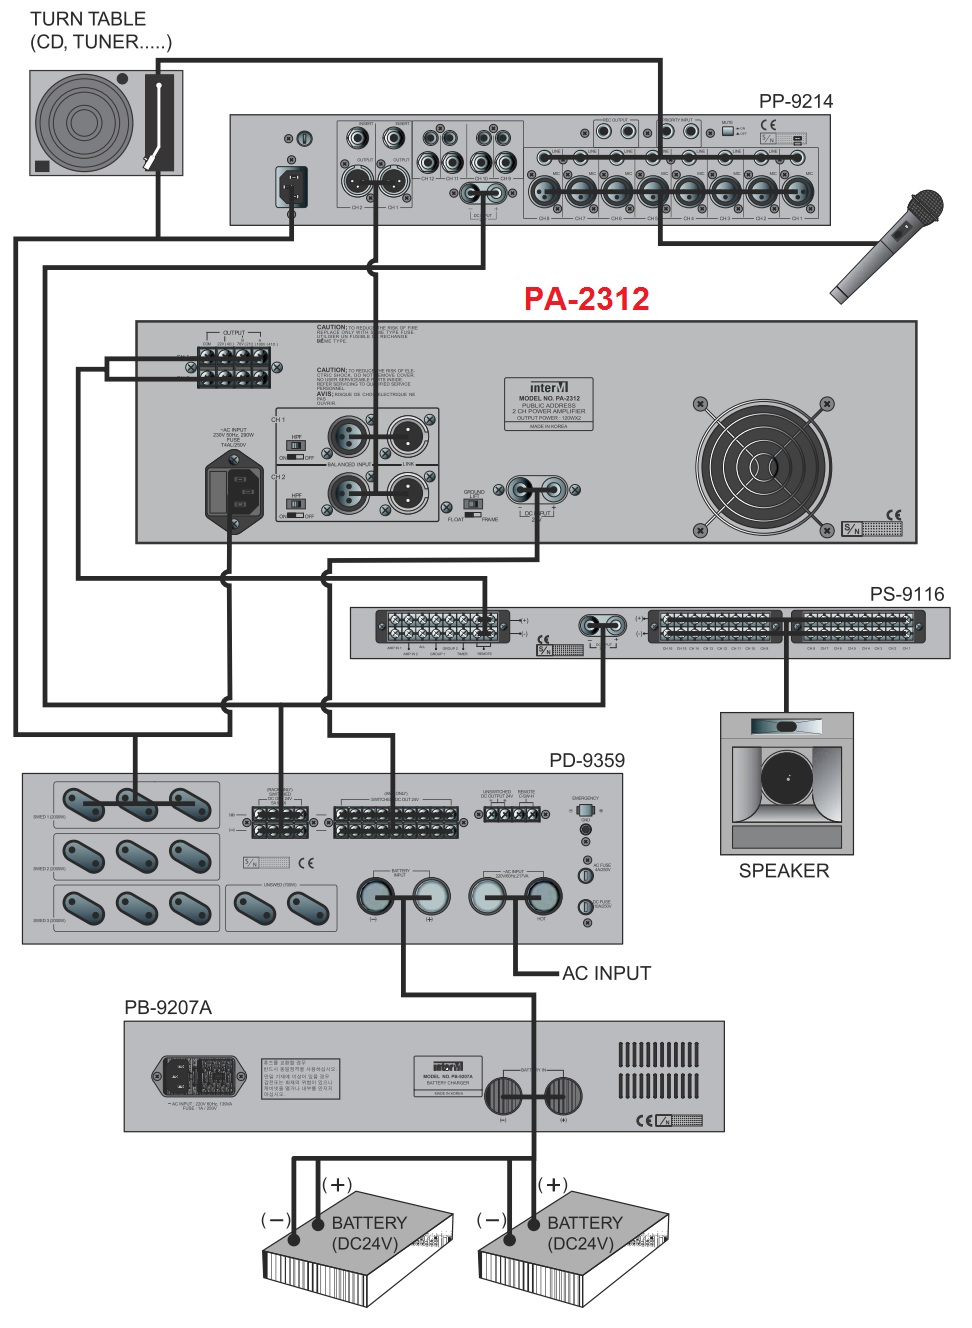 Схема подключения PA-2312